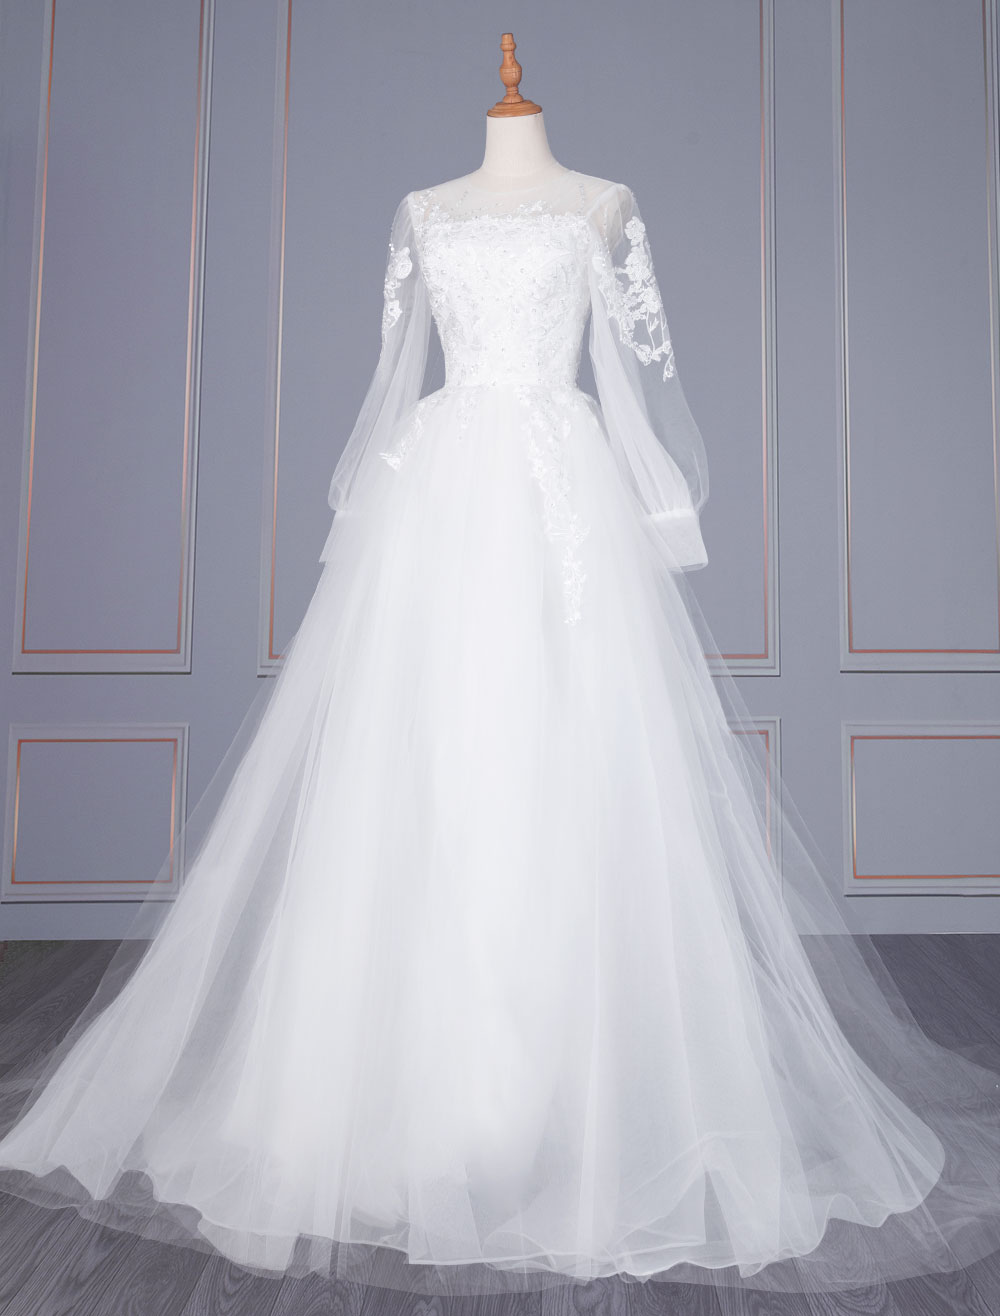 Mariage Robes de mariée | Robe de mariée blanche simple col bijou manches longues dentelle tulle longues robes de mariée A-ligne - VI03759